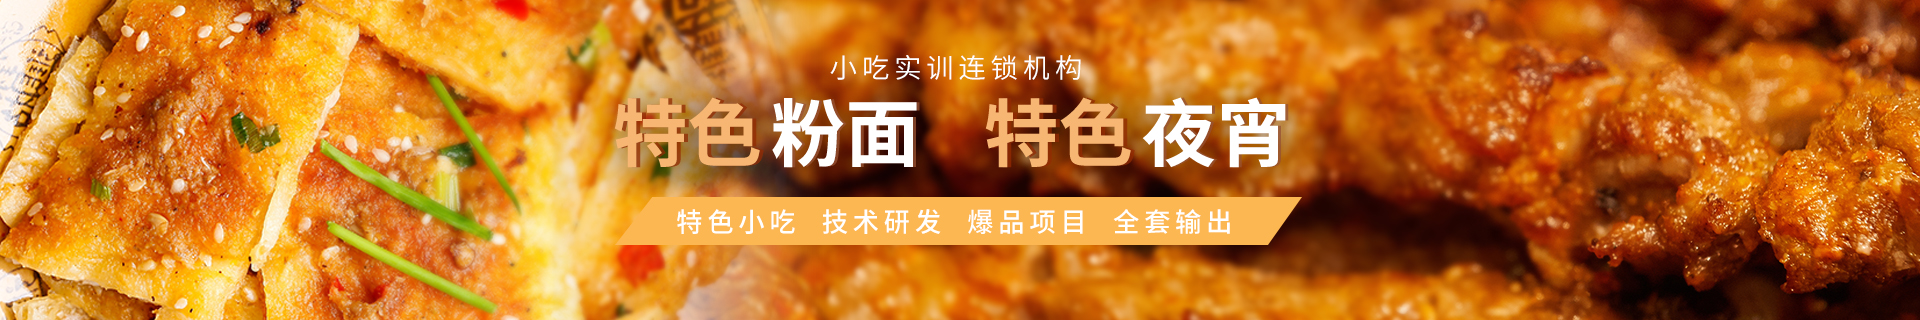 惠州食为先小吃培训中心